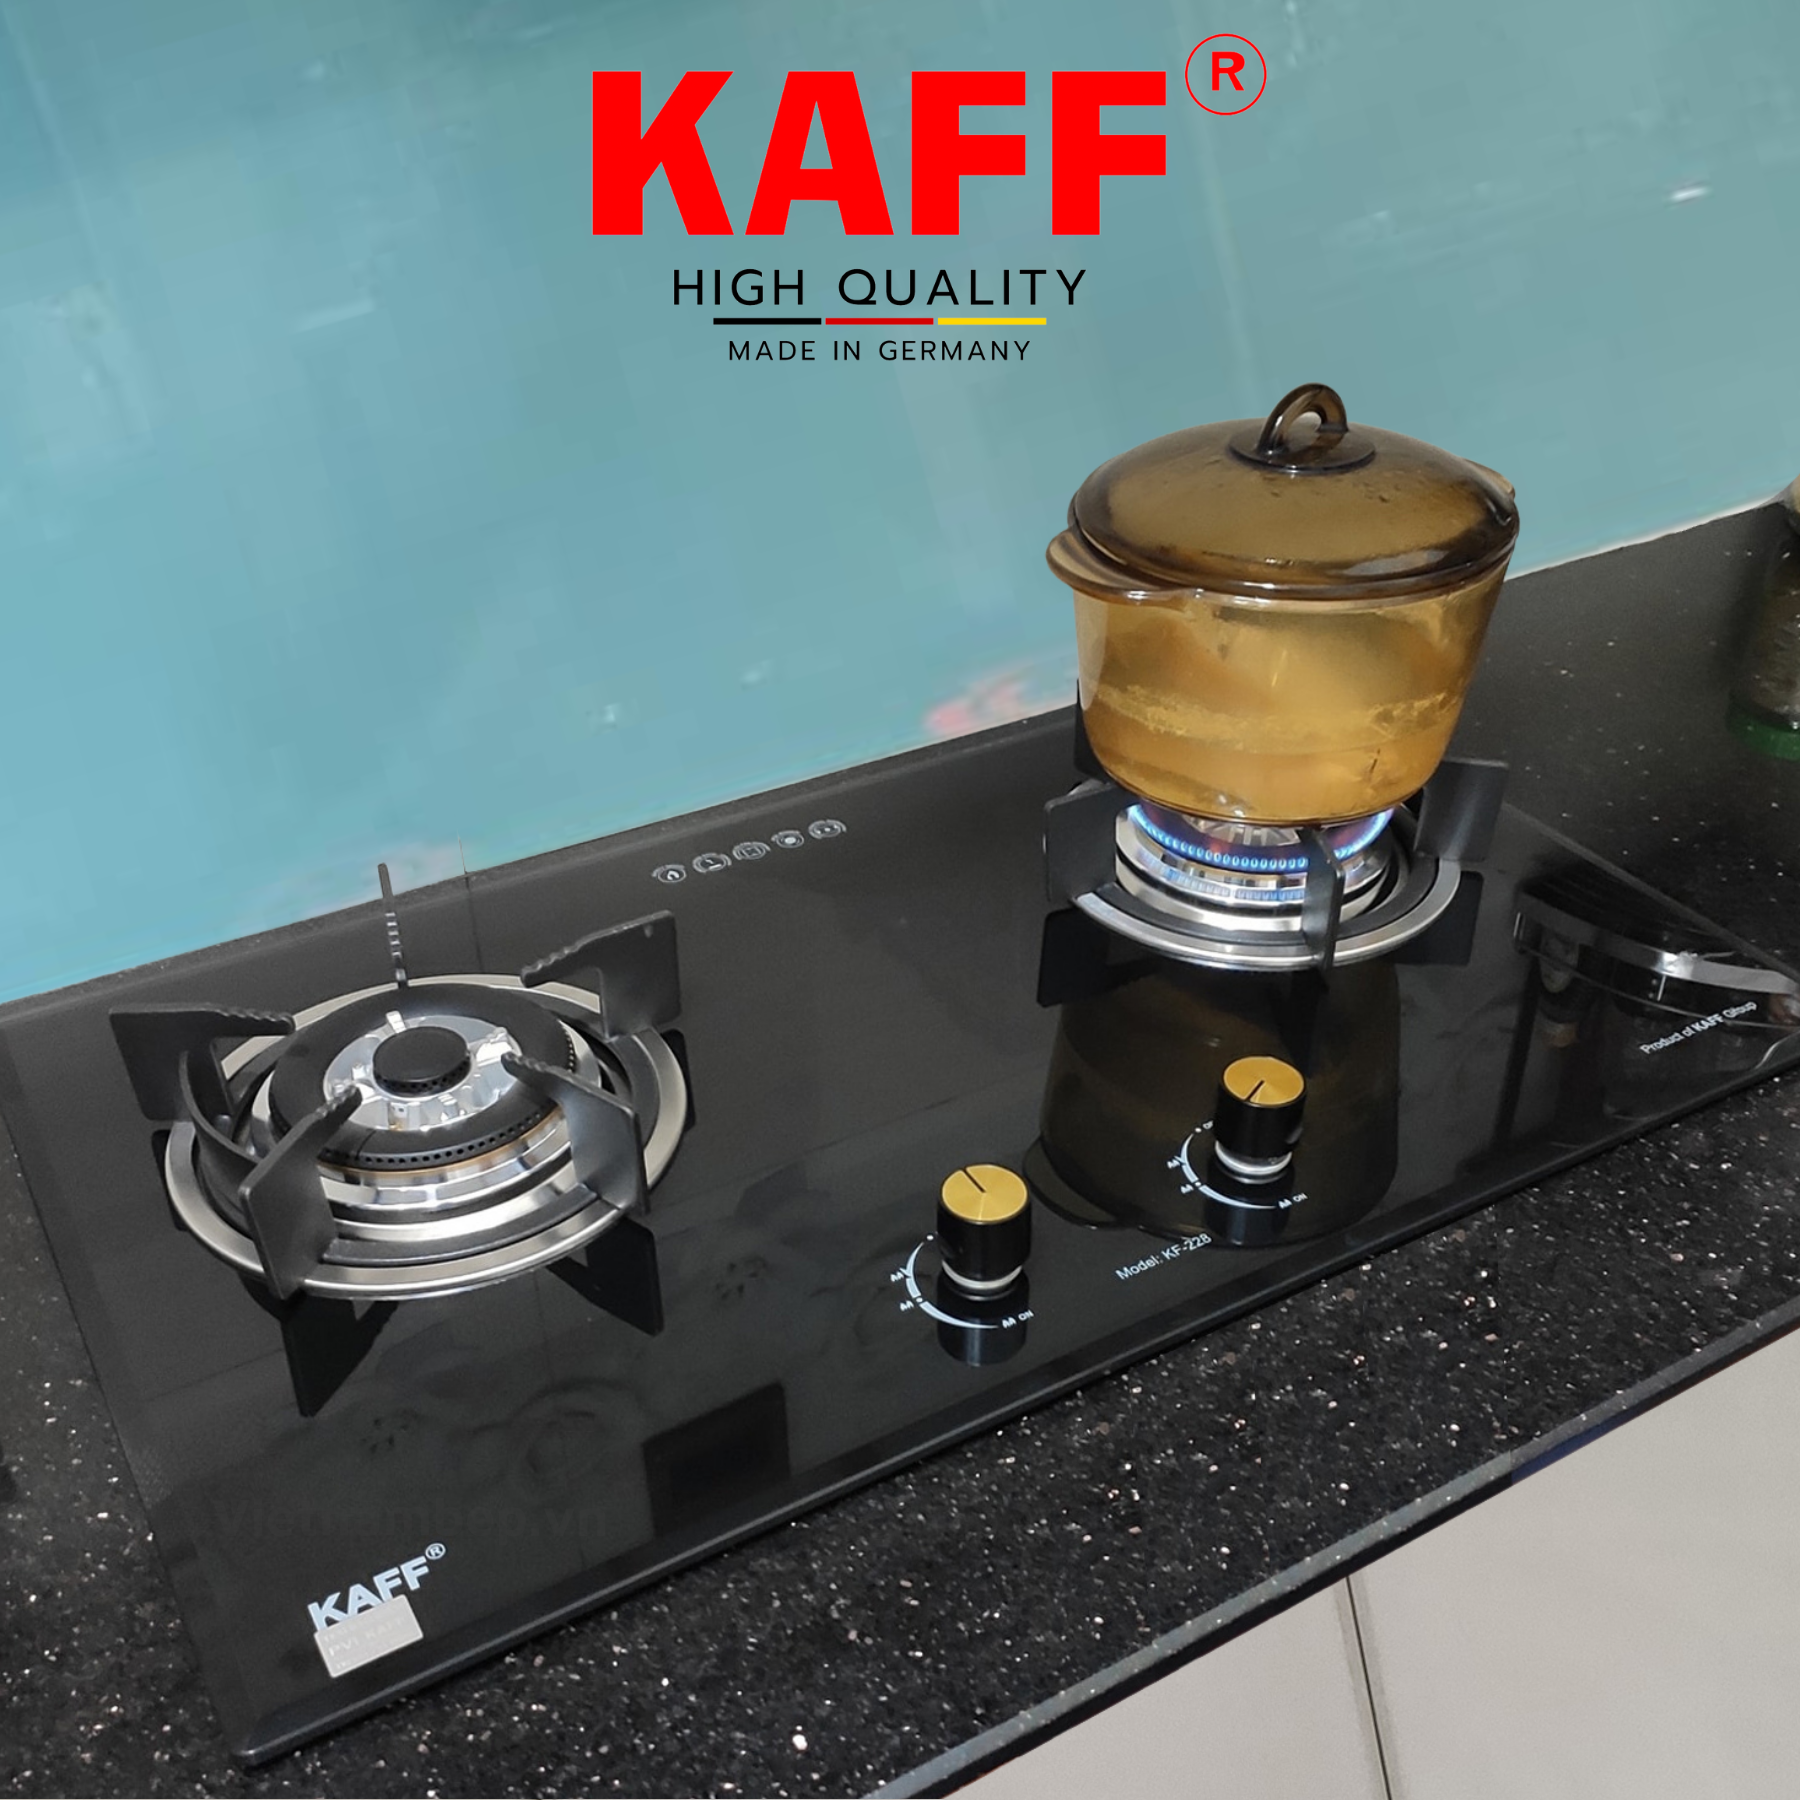 Bộ Bếp ga âm KAFF KF- 228 bao gồm: Bếp ga + chảo chống dính cao cấp + bộ van ga - Hàng chính hãng